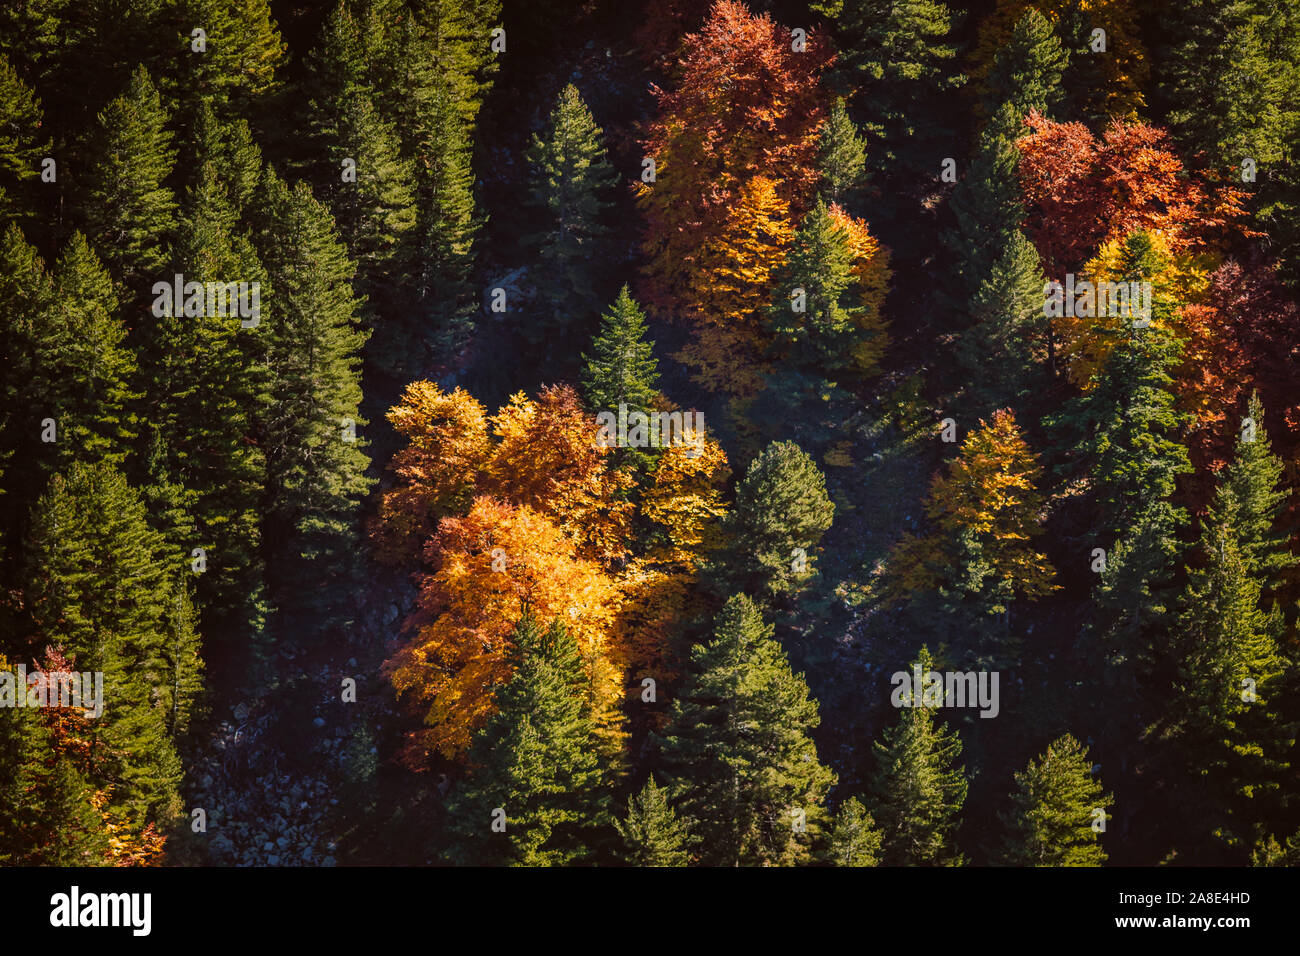 Blick von oben auf eine bunte, Herbst Laubbäume in einem grünen Nadelwald verstreut. Herbst Mischwald grün, gelb, rot und braun. Stockfoto